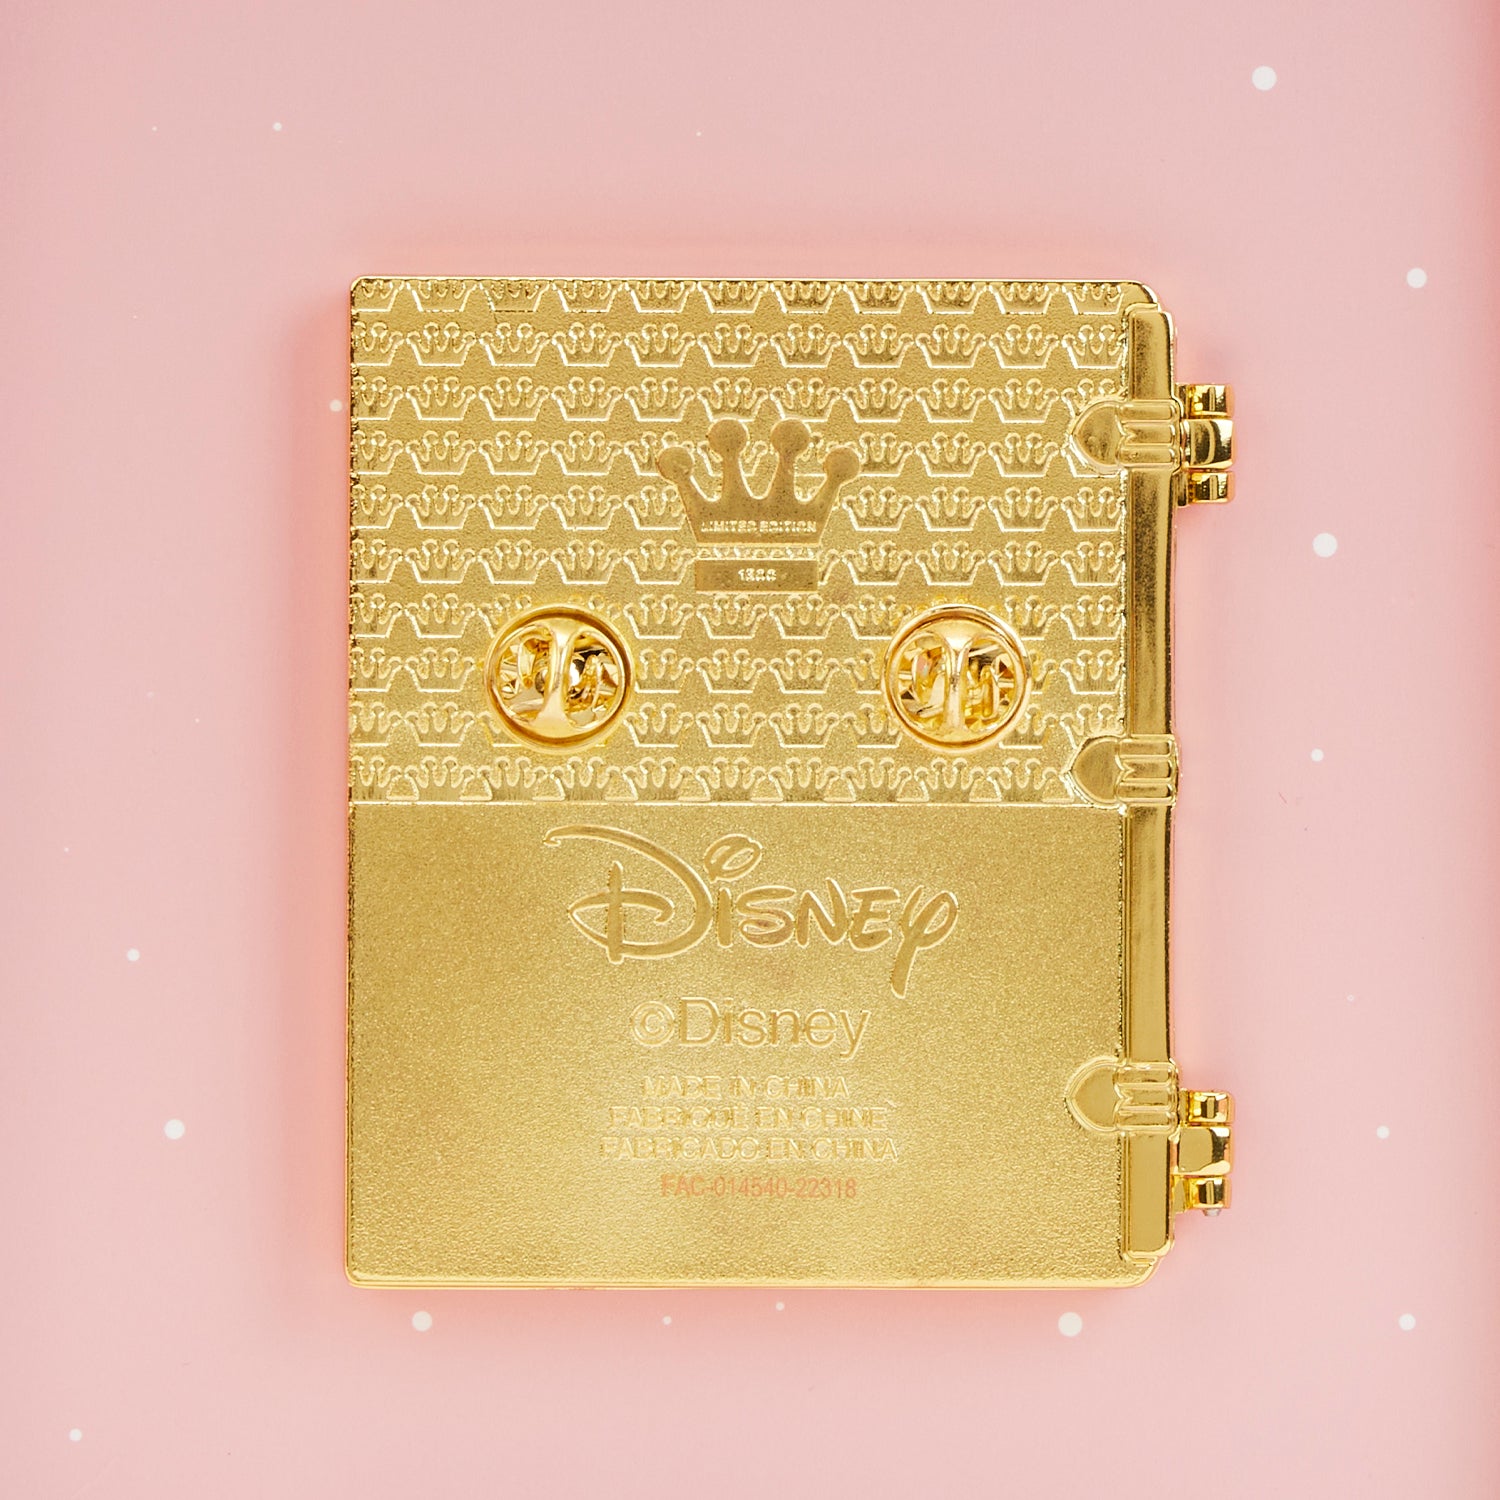 Disney Lanyard Pin Starter Set - Storybook Princess